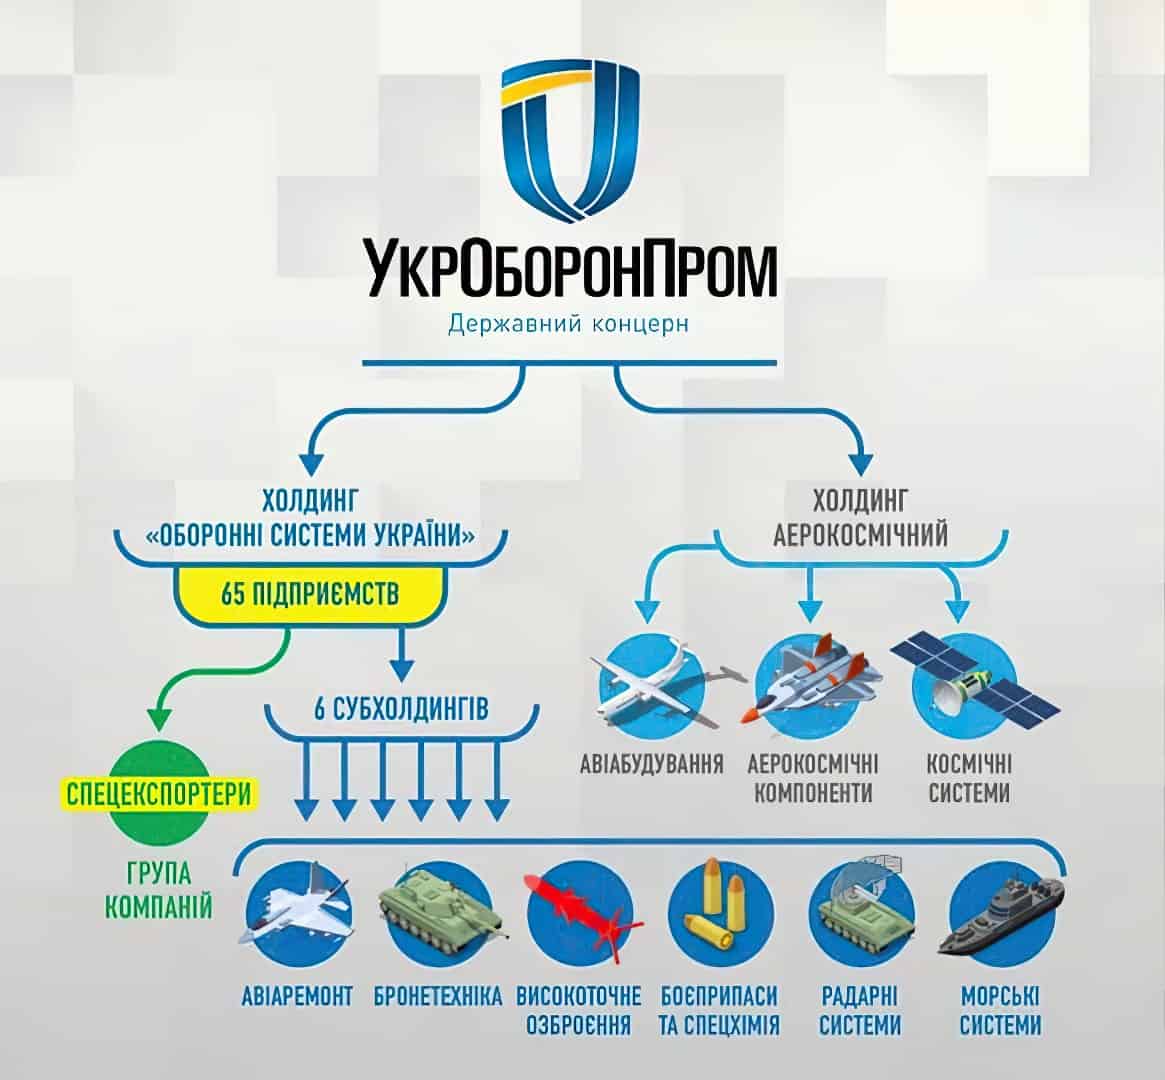 Зображення на тему: Укроборонпром